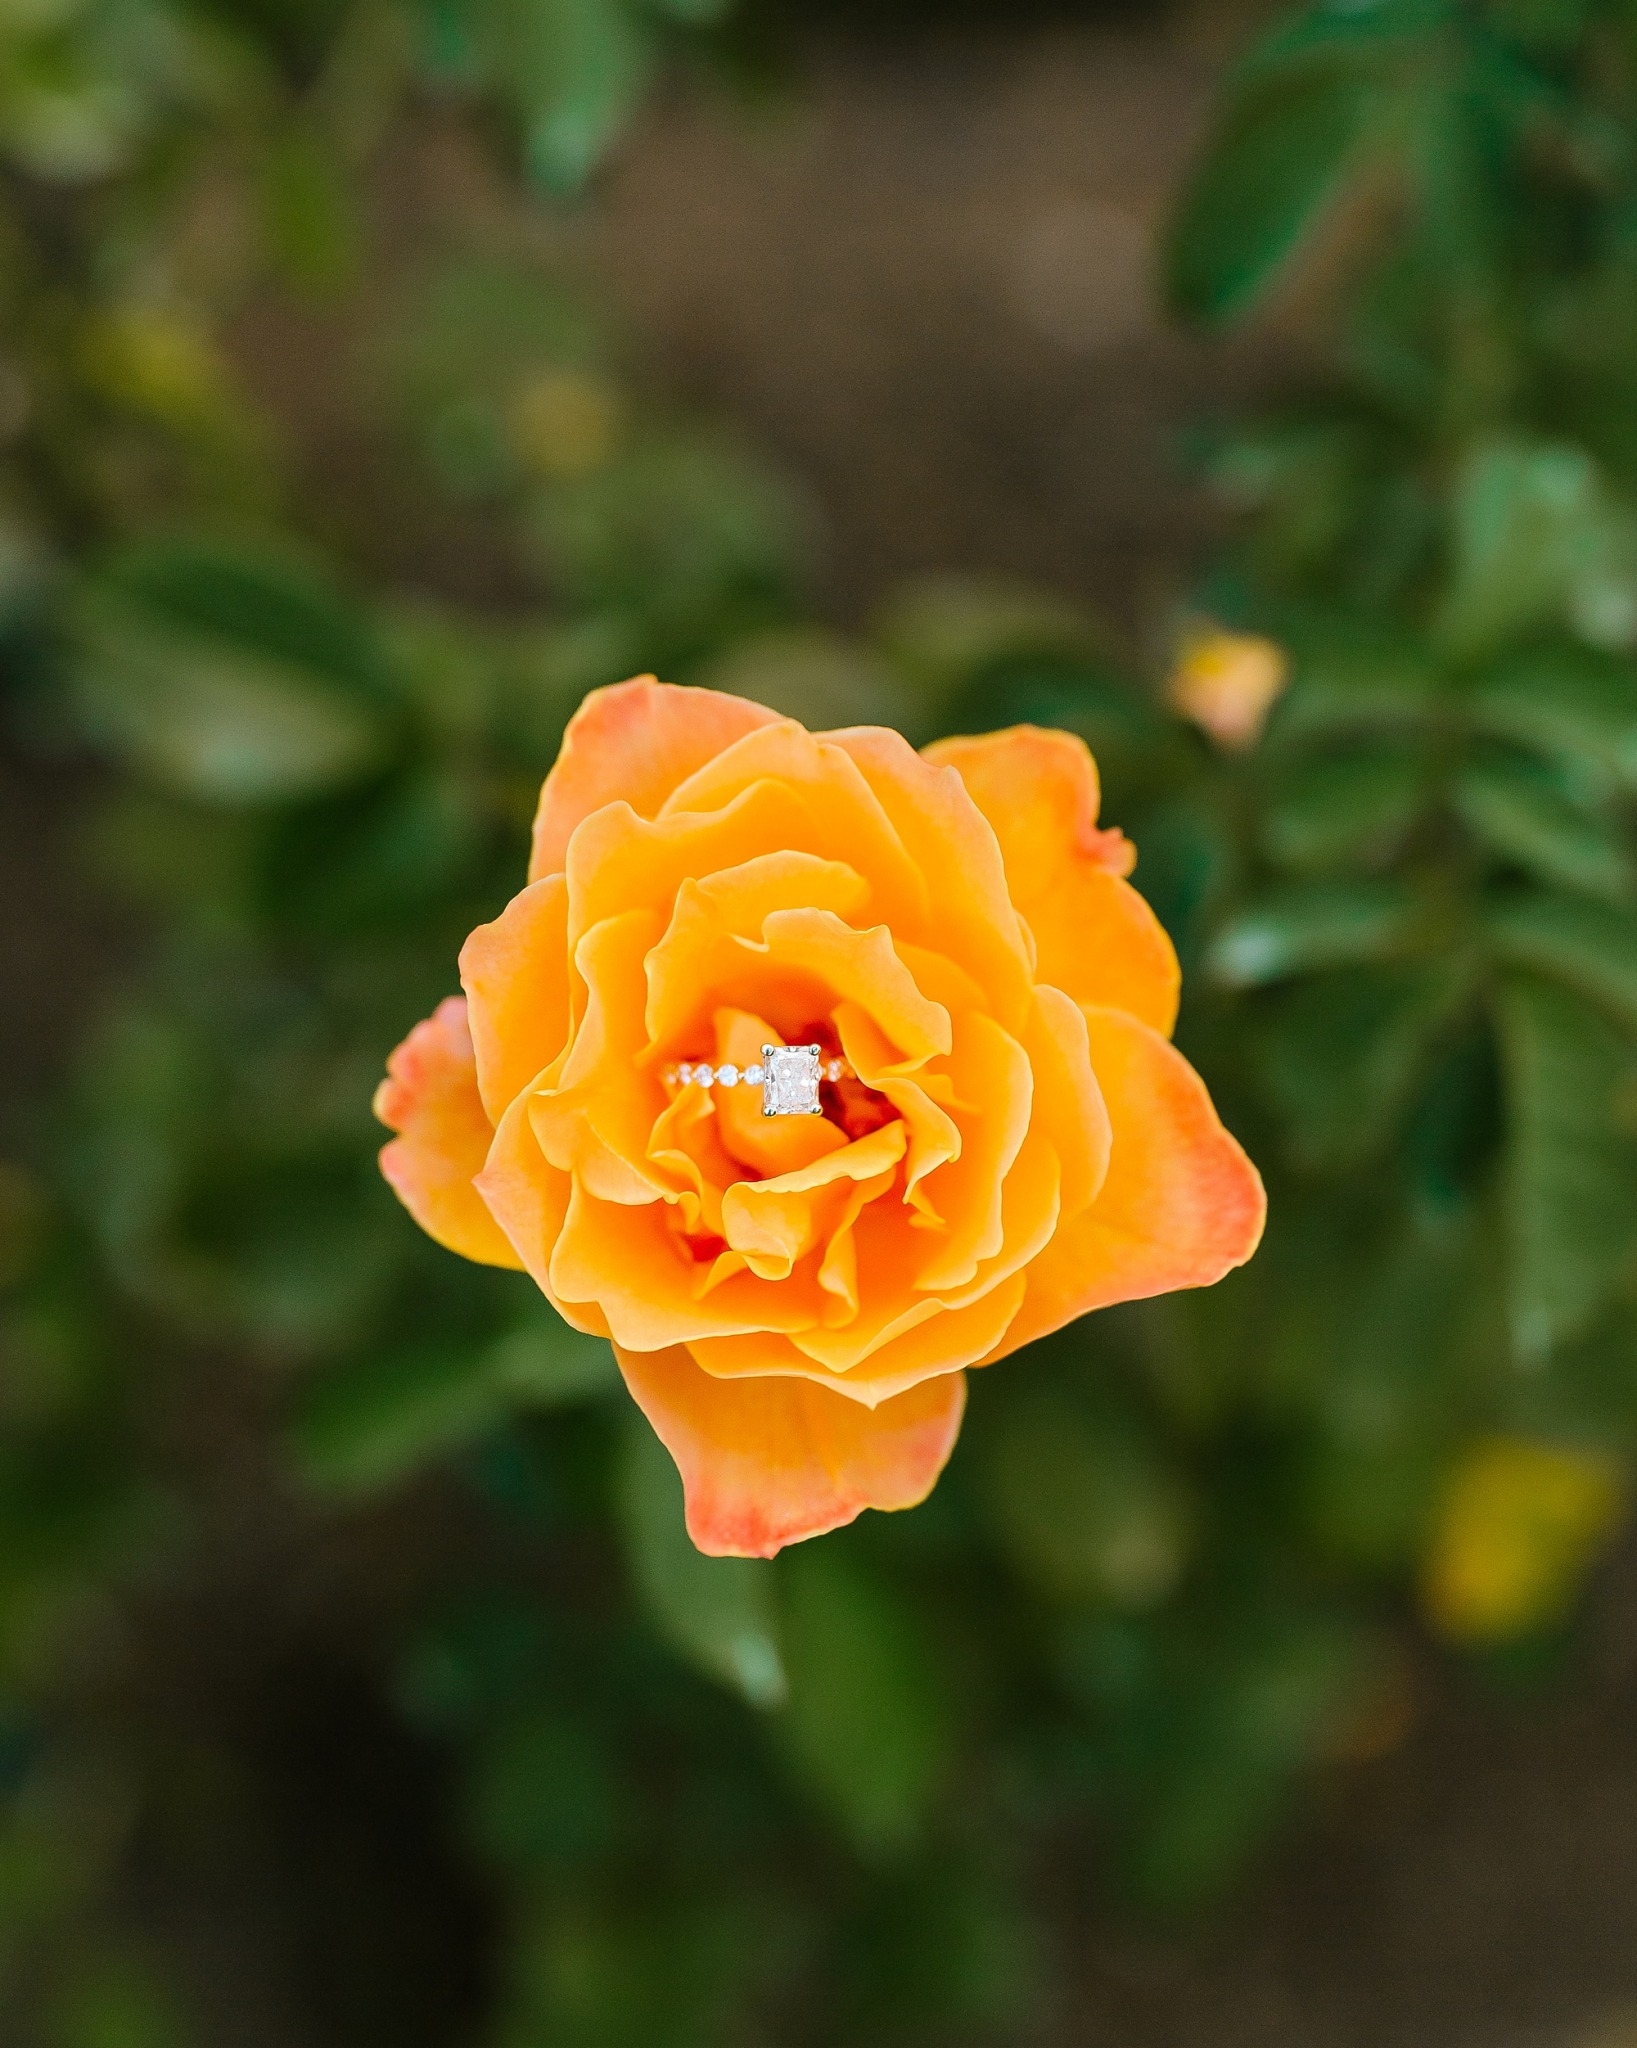 engagement ring rest on orange rose